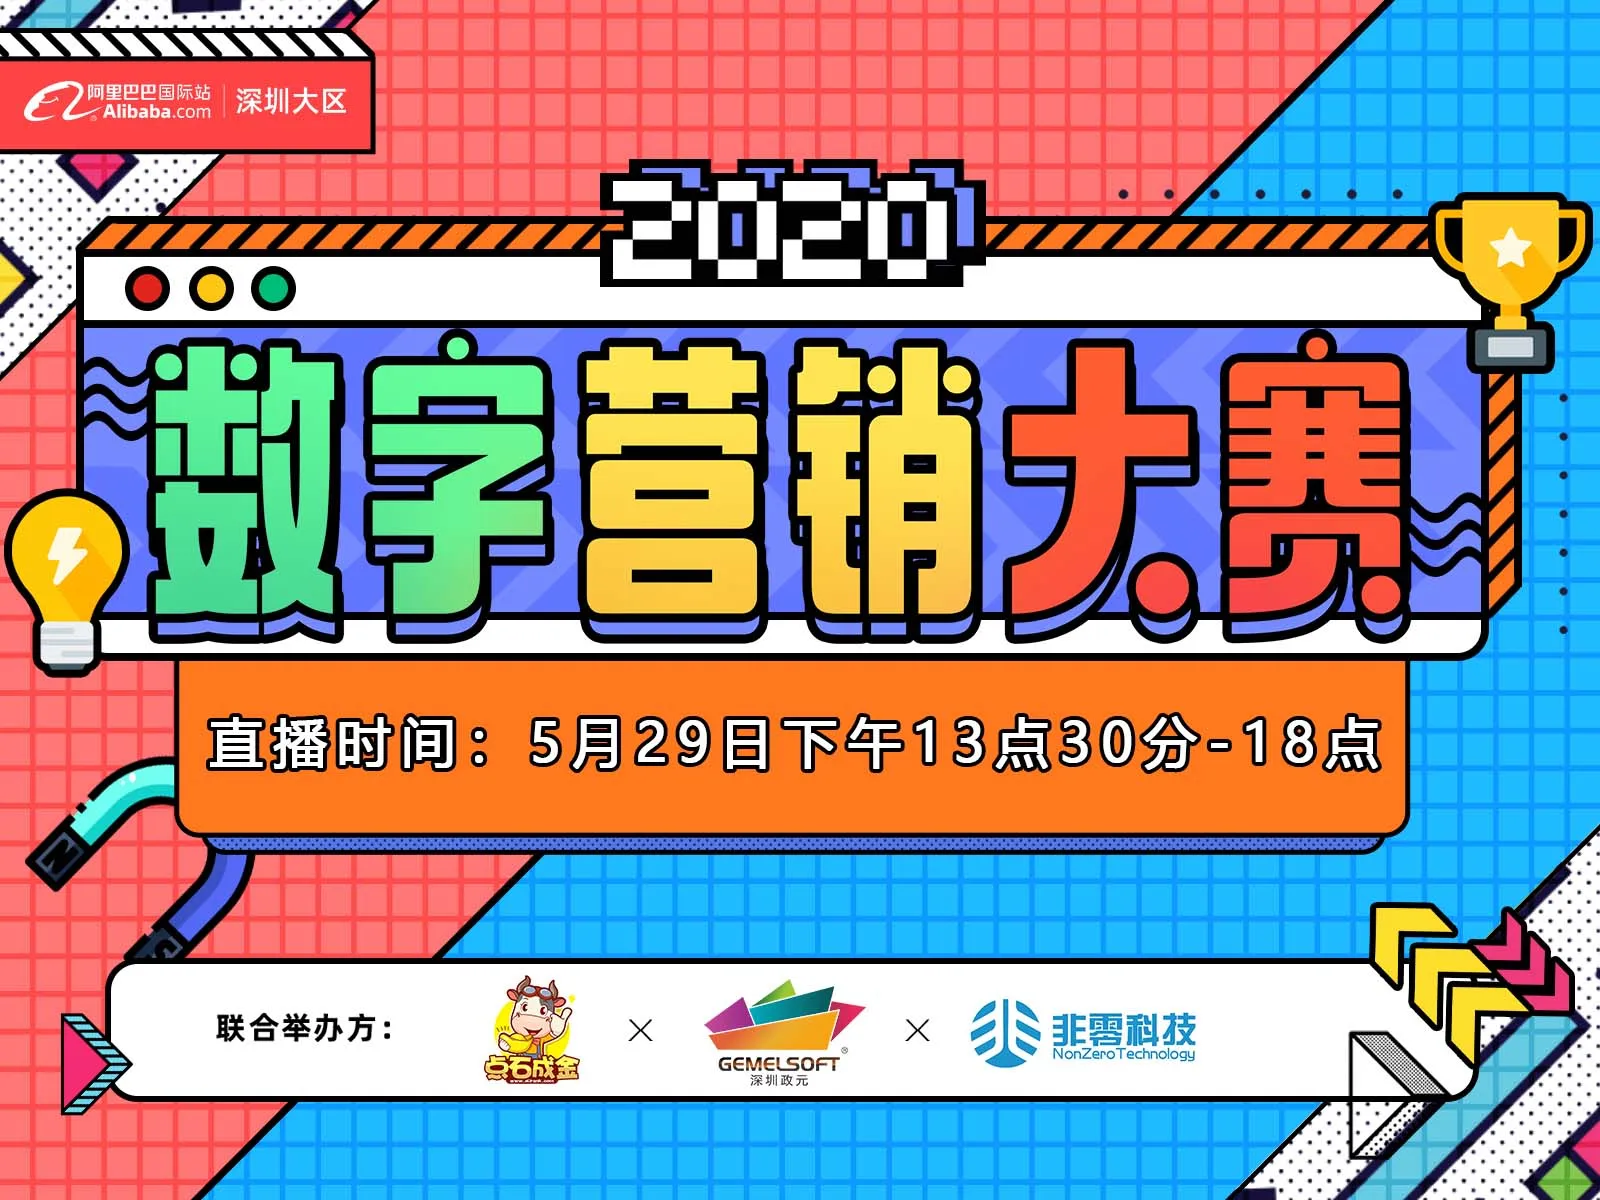 【2020数字营销大赛】深圳大区 龙岗区域决赛